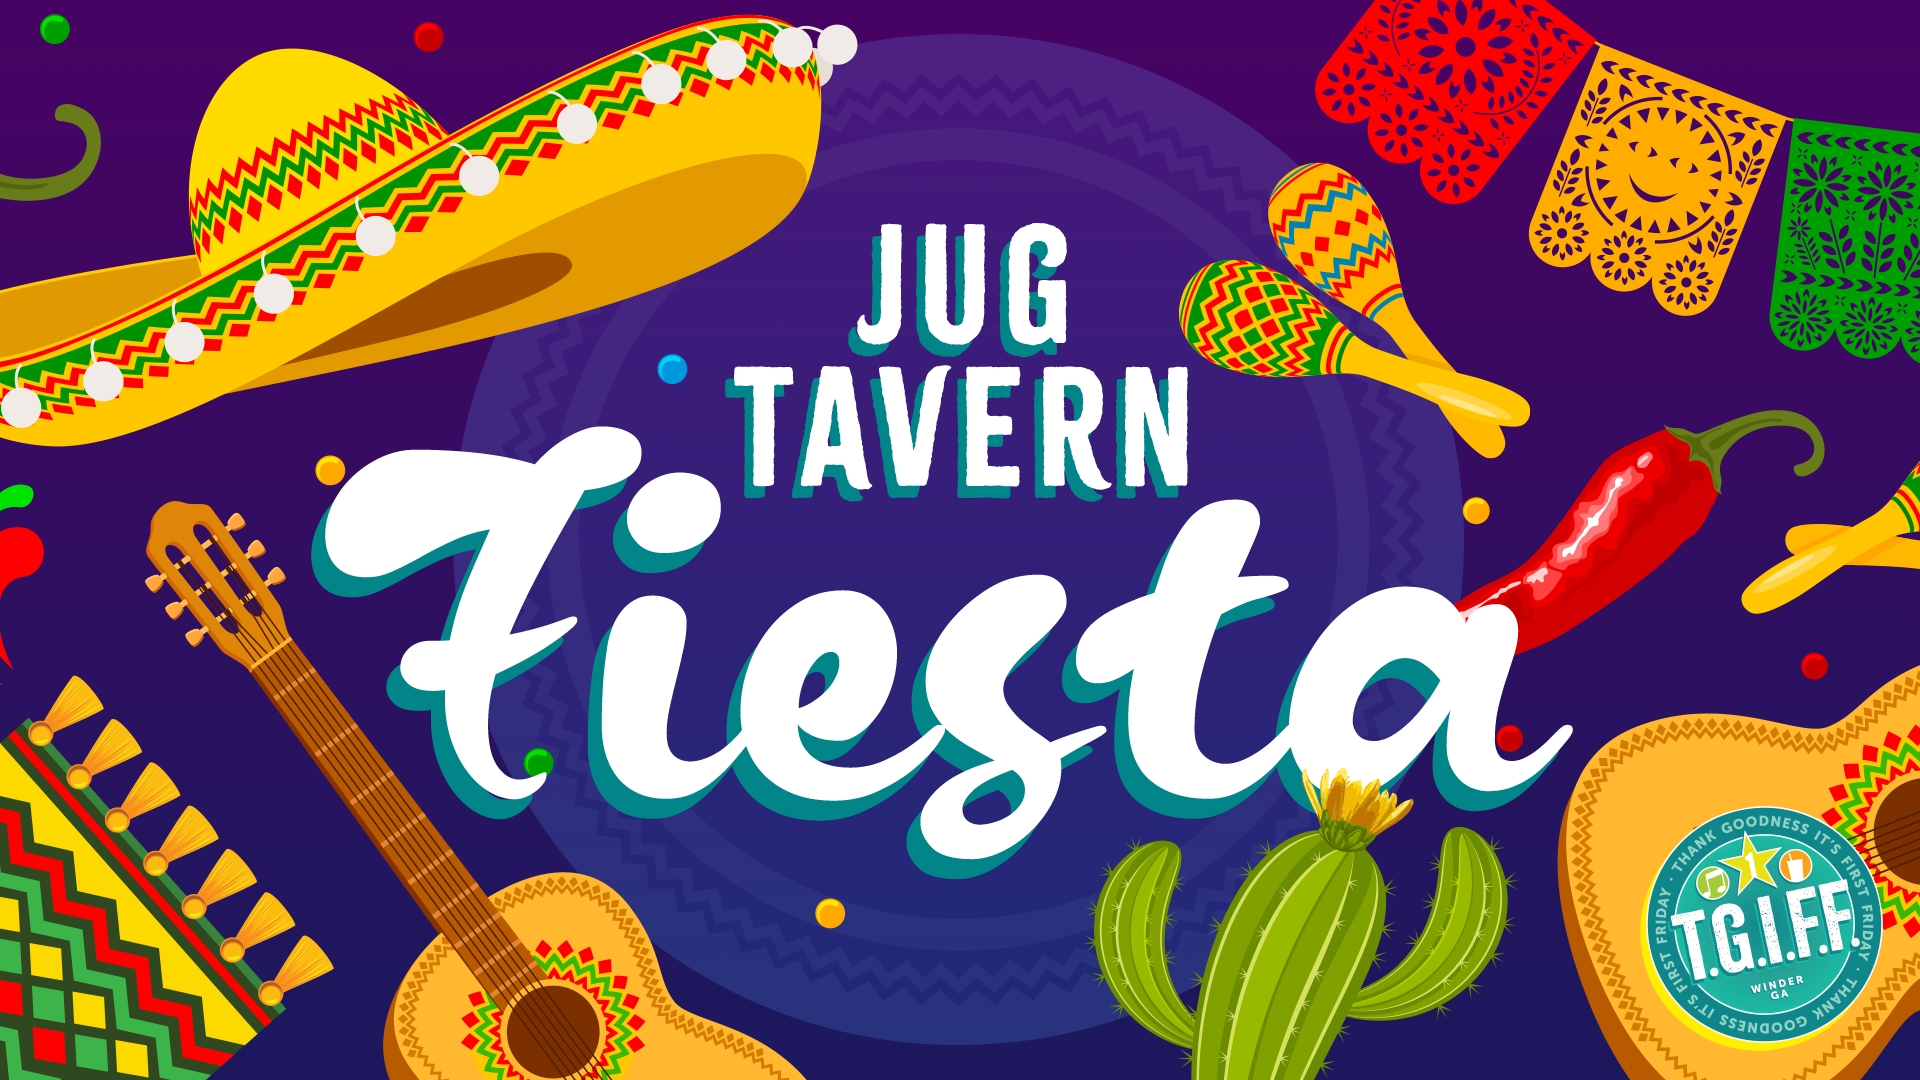 TGIFF Presents: Jug Tavern Fiesta